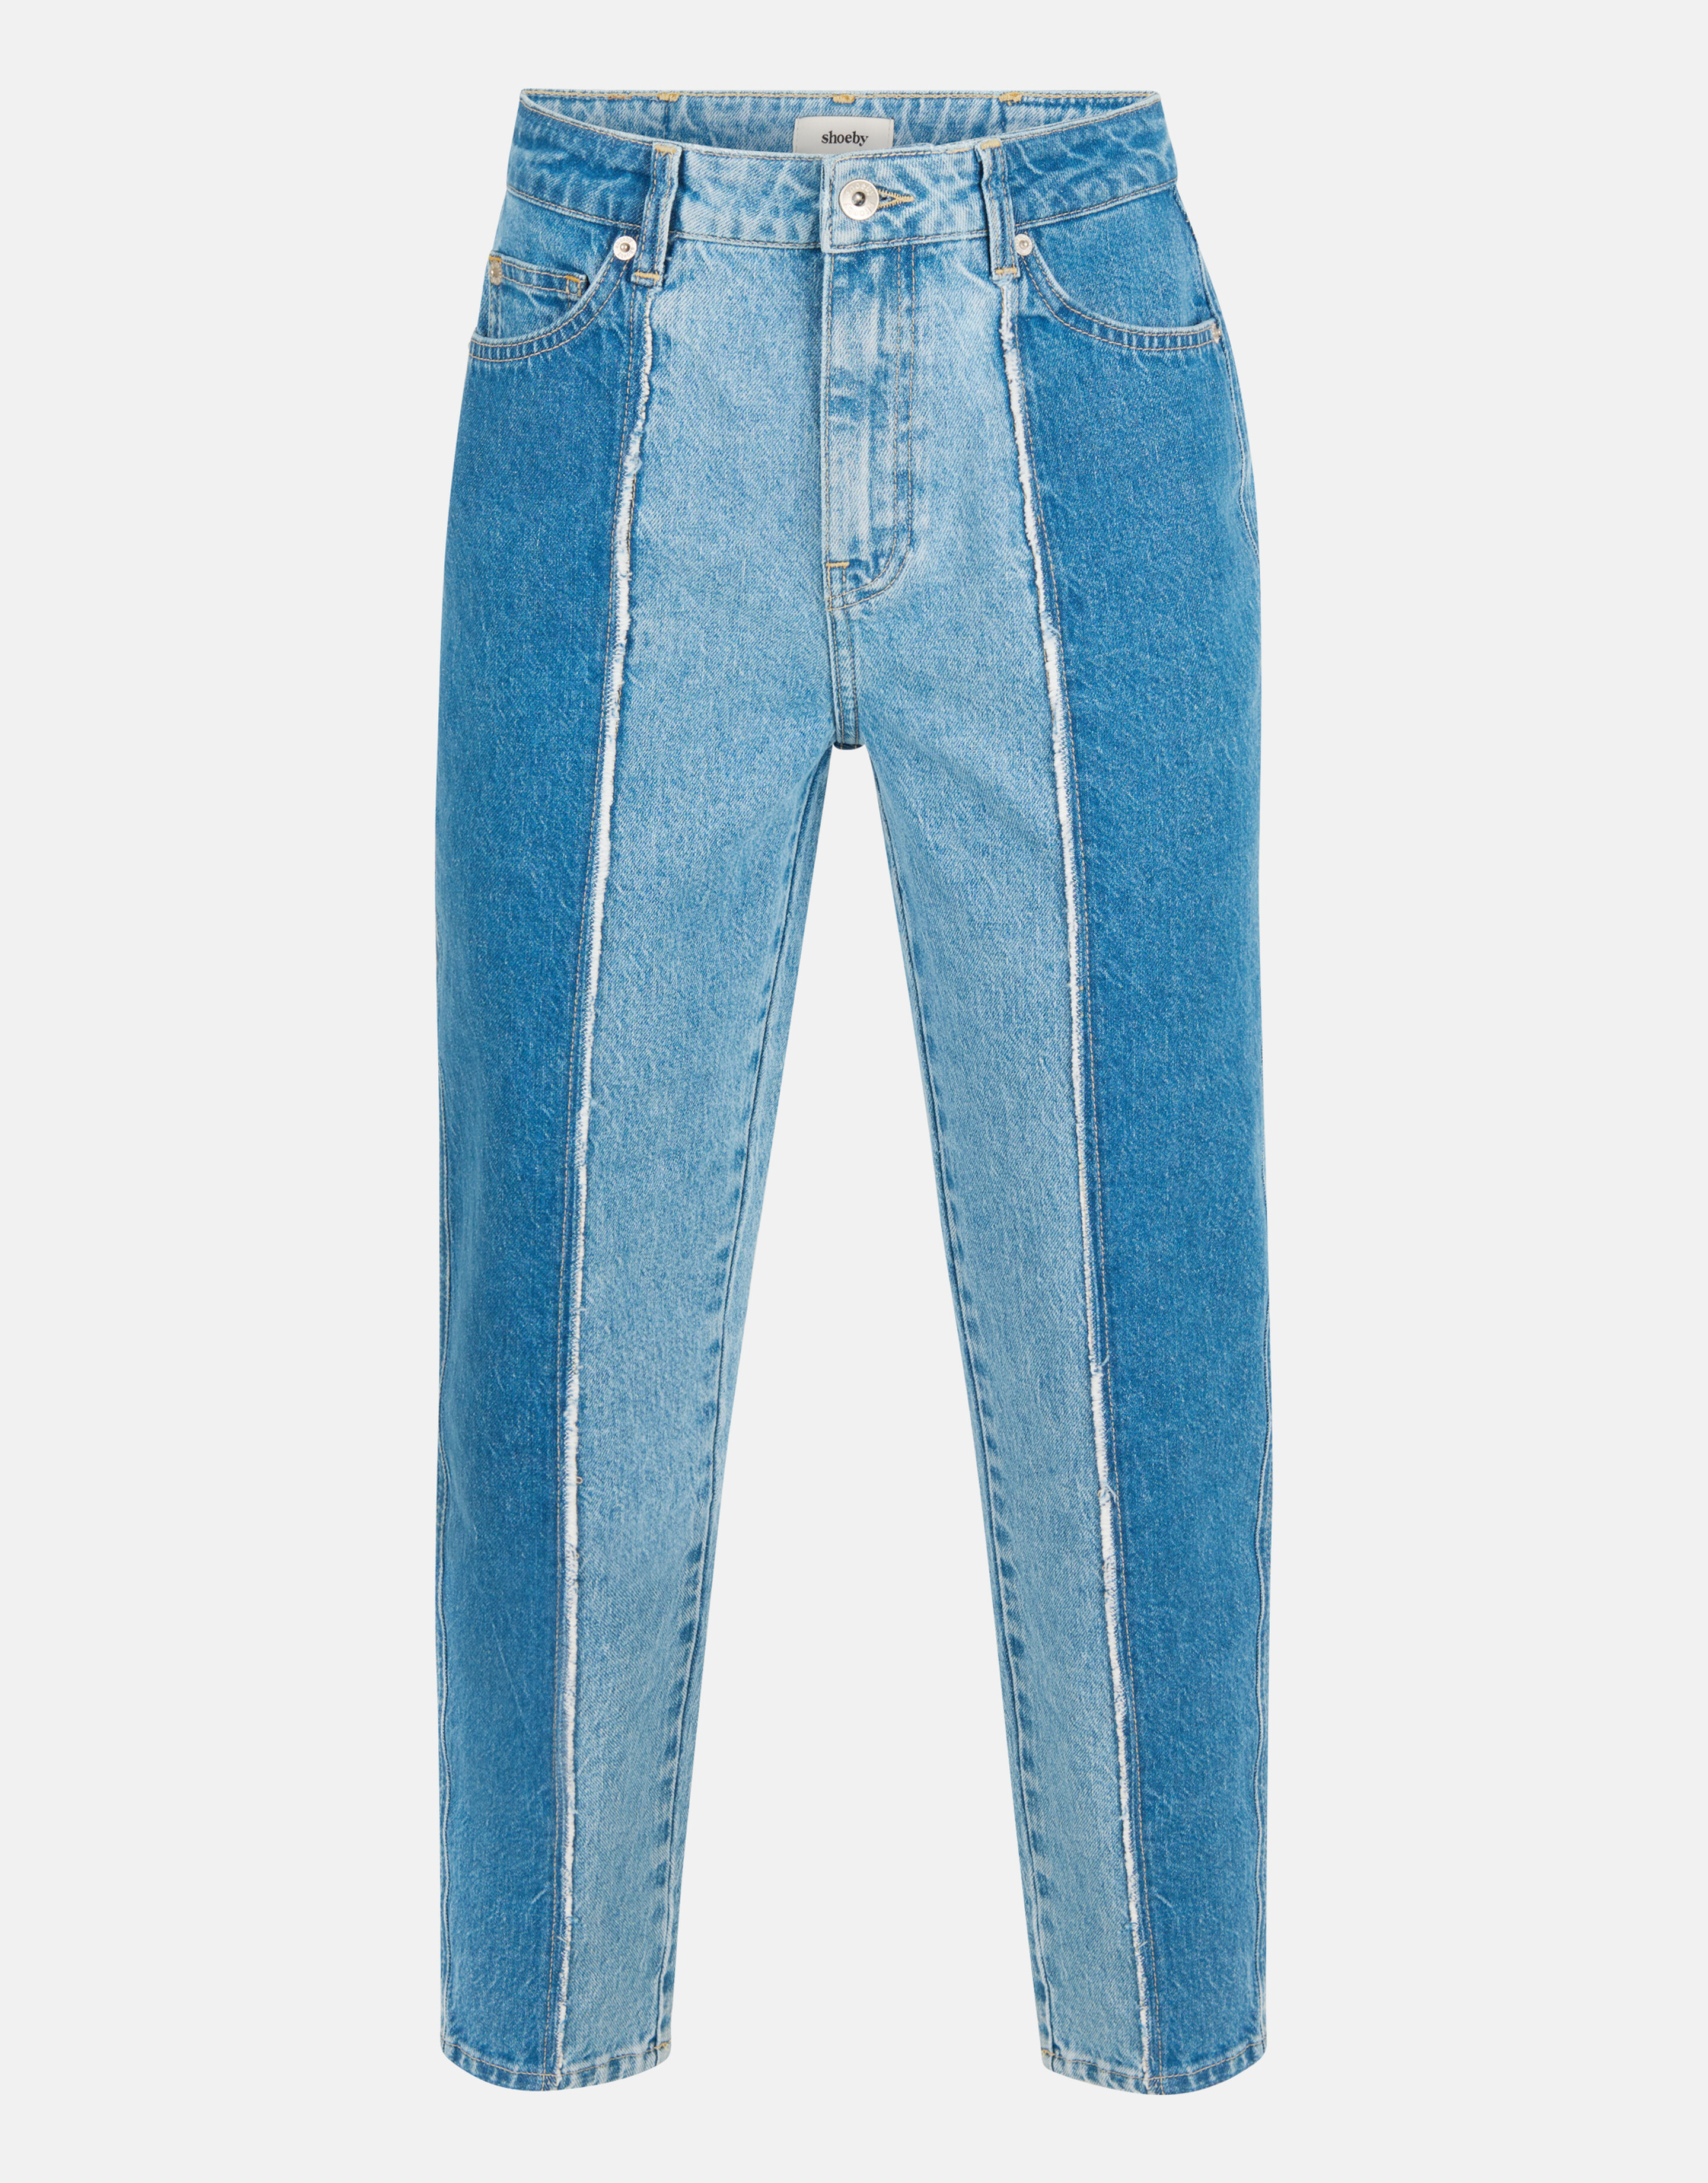 Zweifarbige Denim-Jeans Mediumstone Länge 28 SHOEBY WOMEN